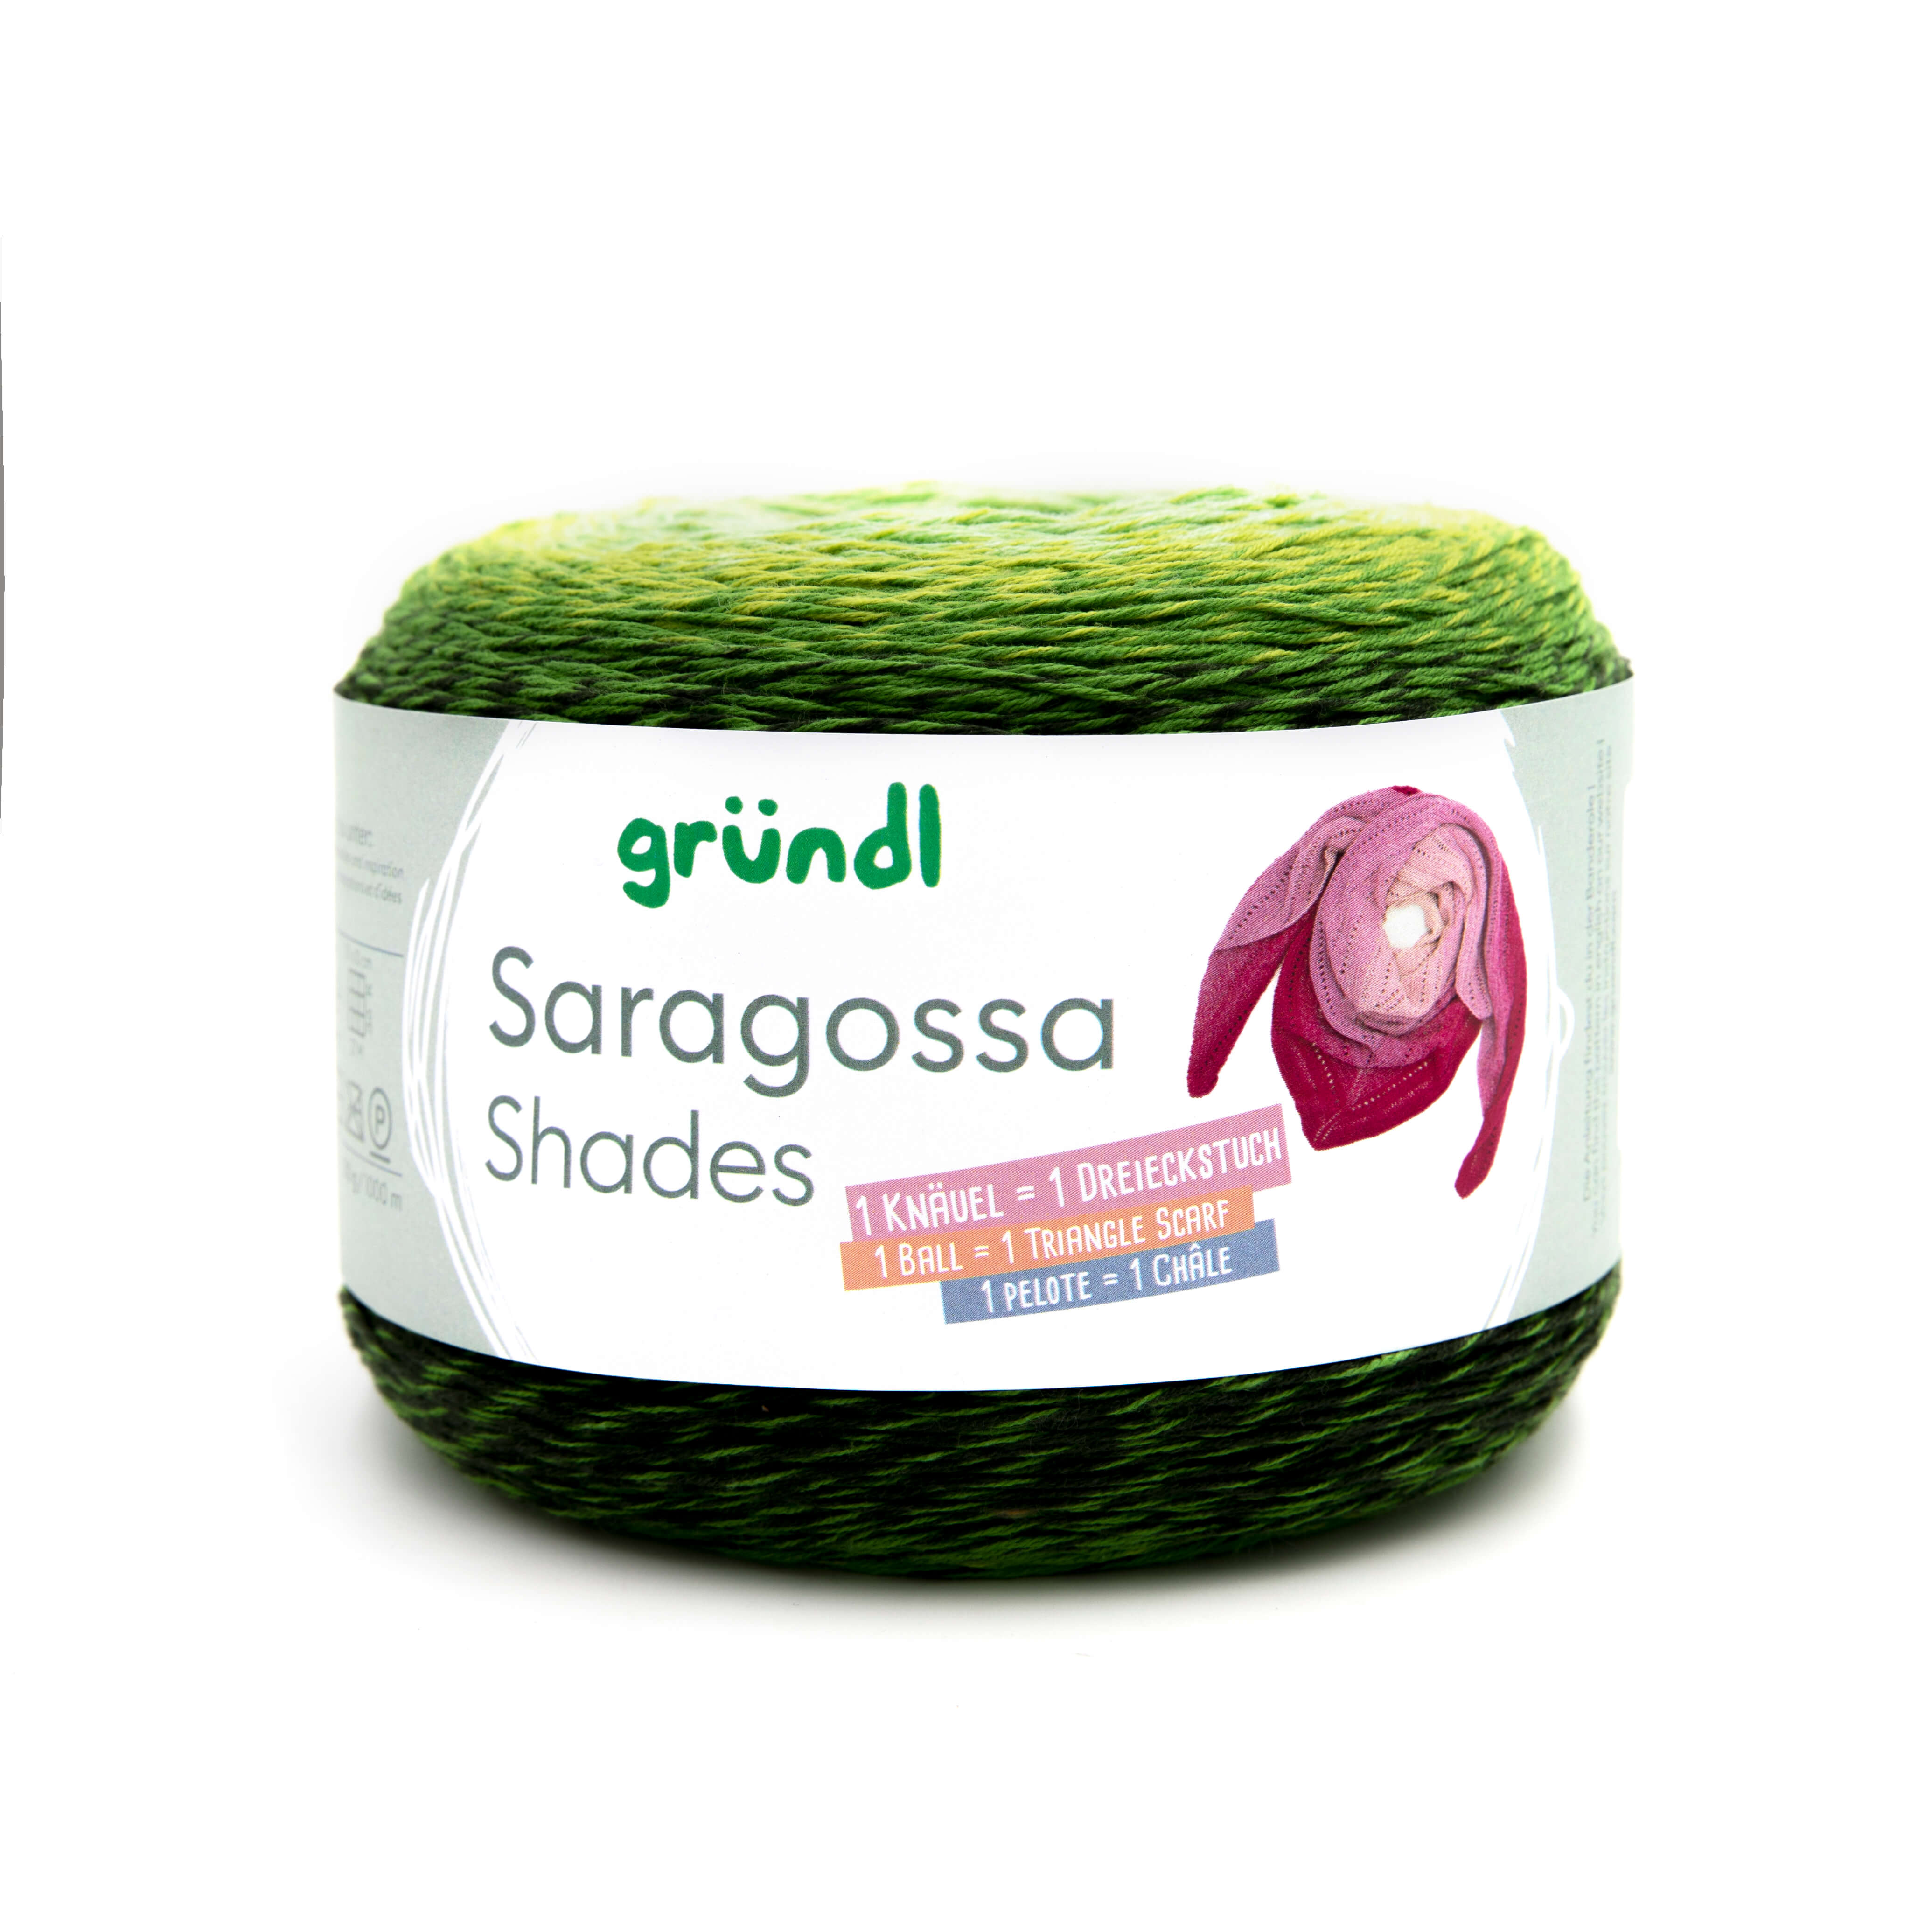 Gründl Saragossa Shades Wolle 250g/1000m